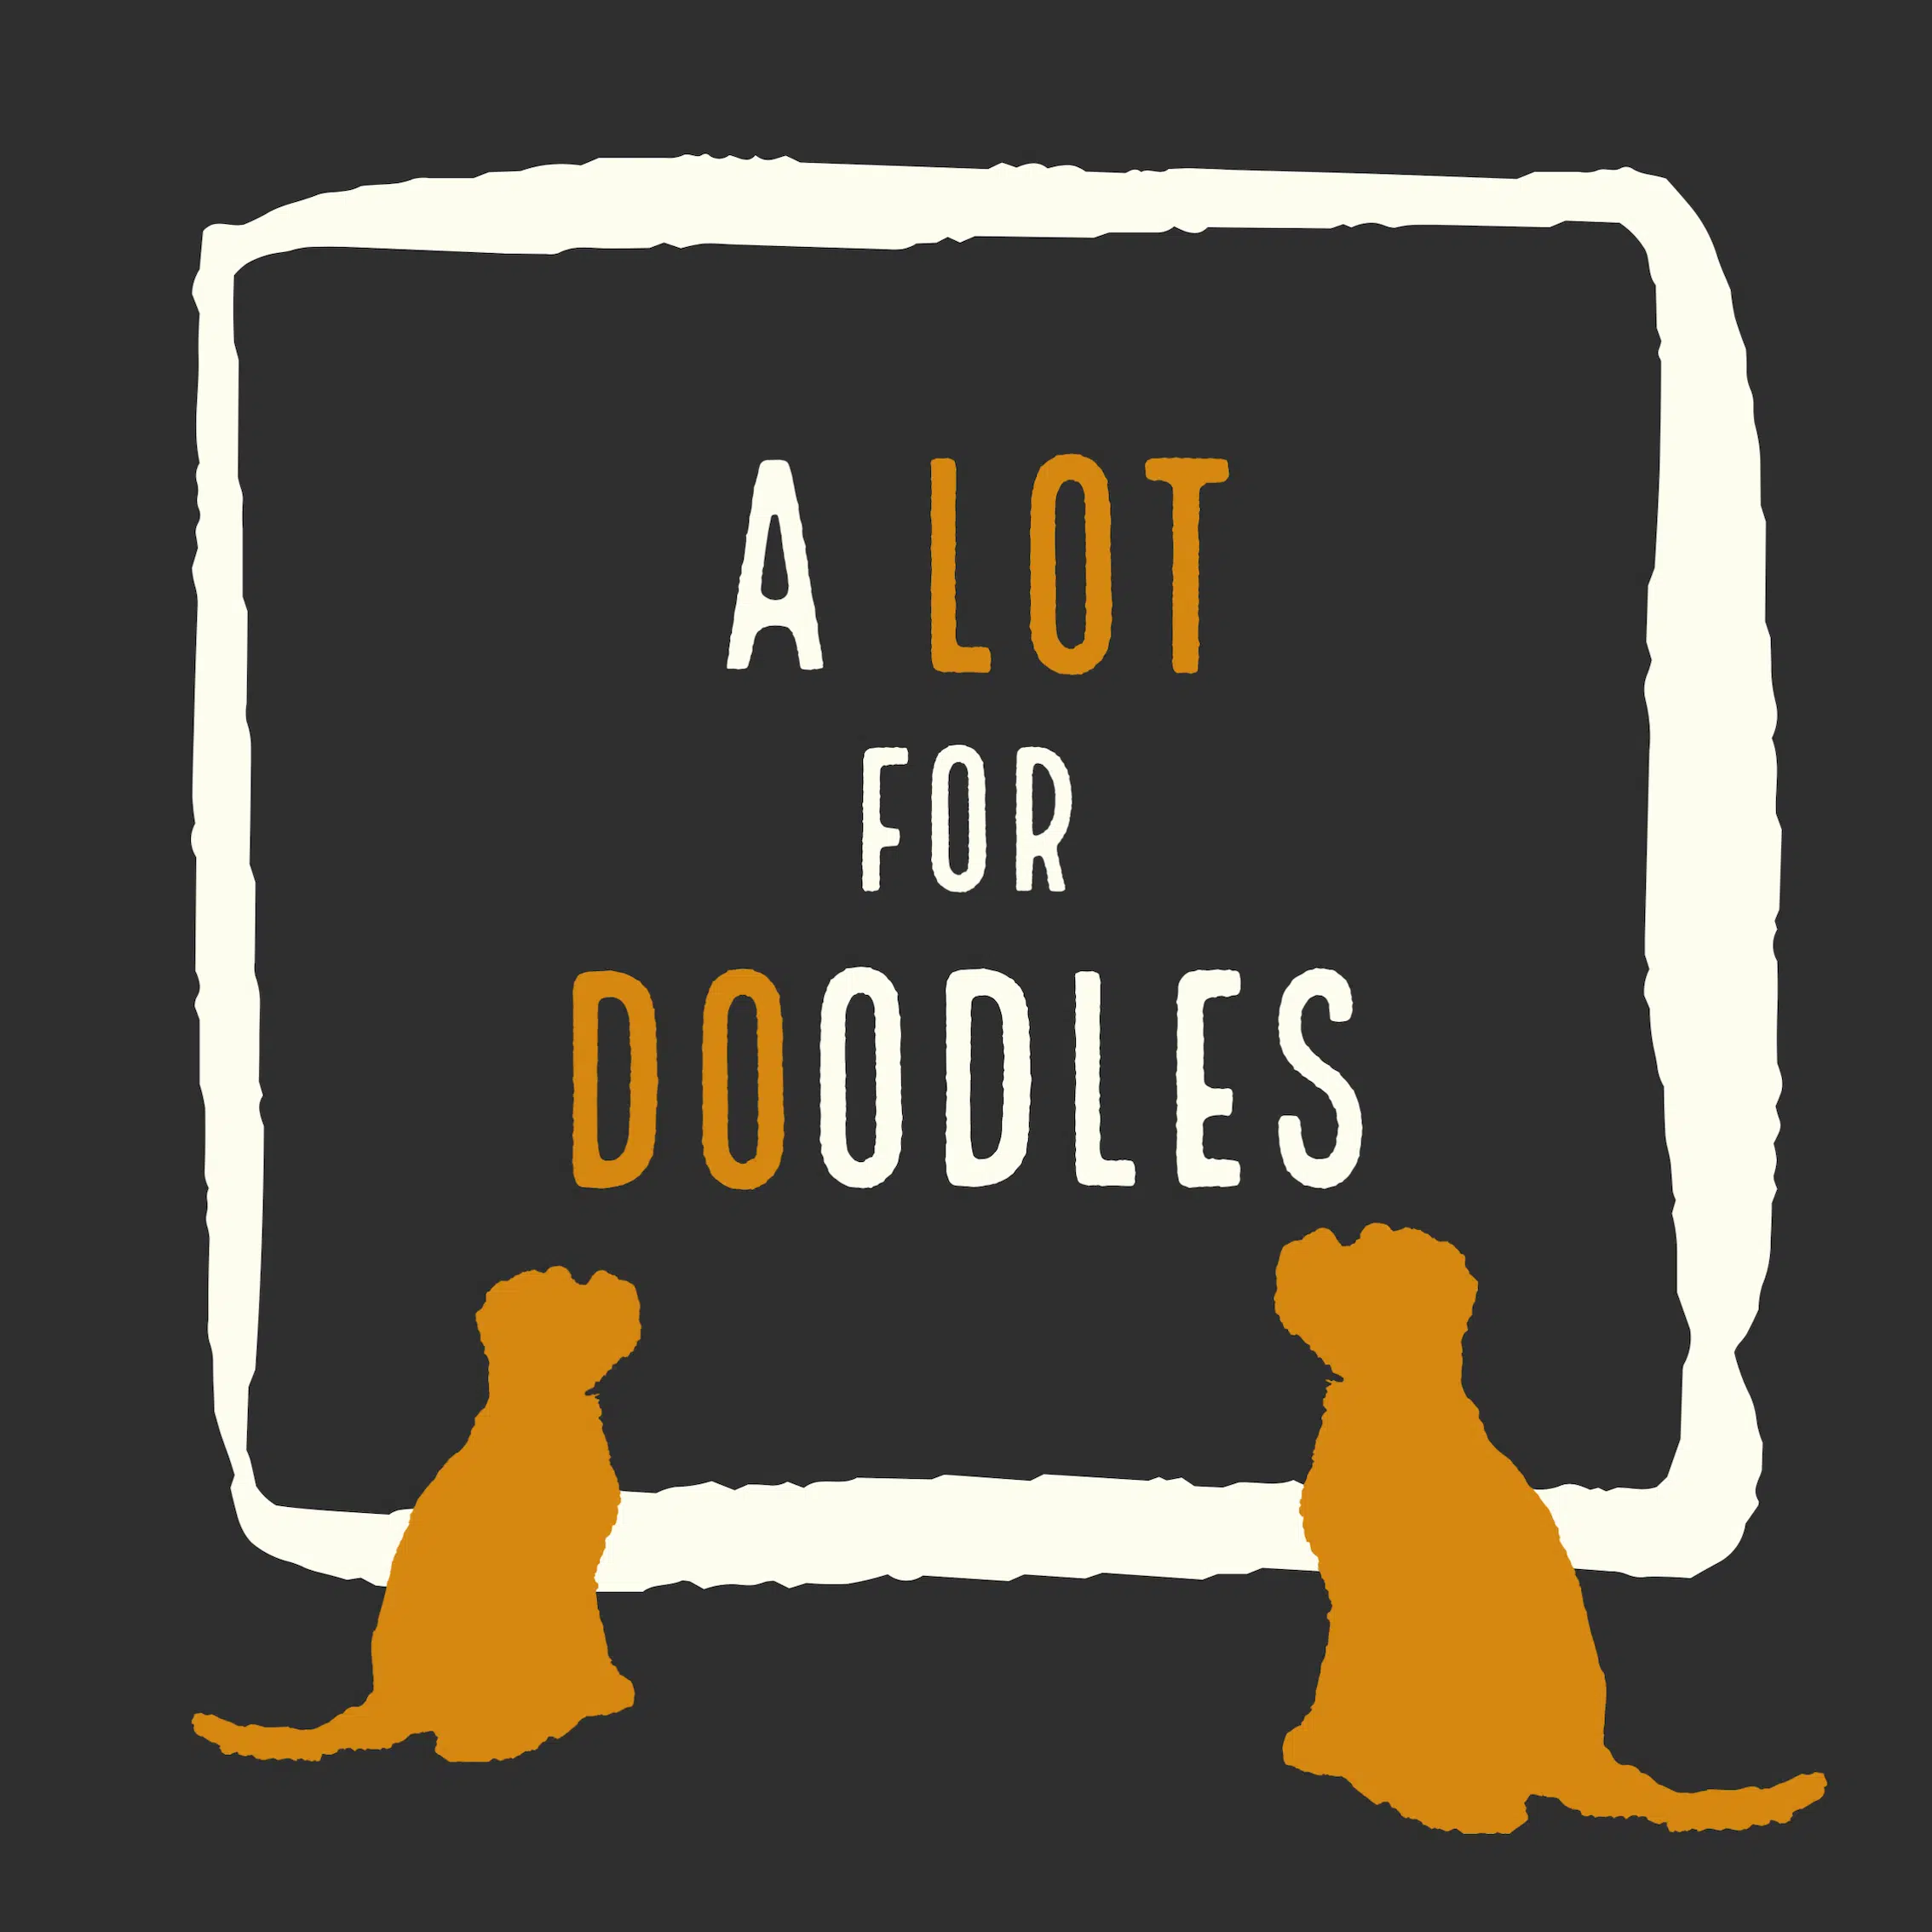 A Lot for Doodles is de leukste webshop voor honden! Je kunt bij ons terecht voor (interactief) hondenspeelgoed, Yakka's kauwstaven, natuurlijke hondensnacks en natuurlijke honden verzorgingsproducten, Daarnaast hebben we natuurlijk ook voerbakken, bandana's en strikjes. Wij willen het beste voor onze honden en natuurlijk die van jou! Daarom verkopen wij alleen de beste merken. We hebben merken zoals; Bass Brushes, Pet P.L.A.Y. dogtoys, Pawstory, ZippyPaws, Fuzzyard, Hugsmart, Soos pets, Carniwell, Yakka's en Huxley and Kent